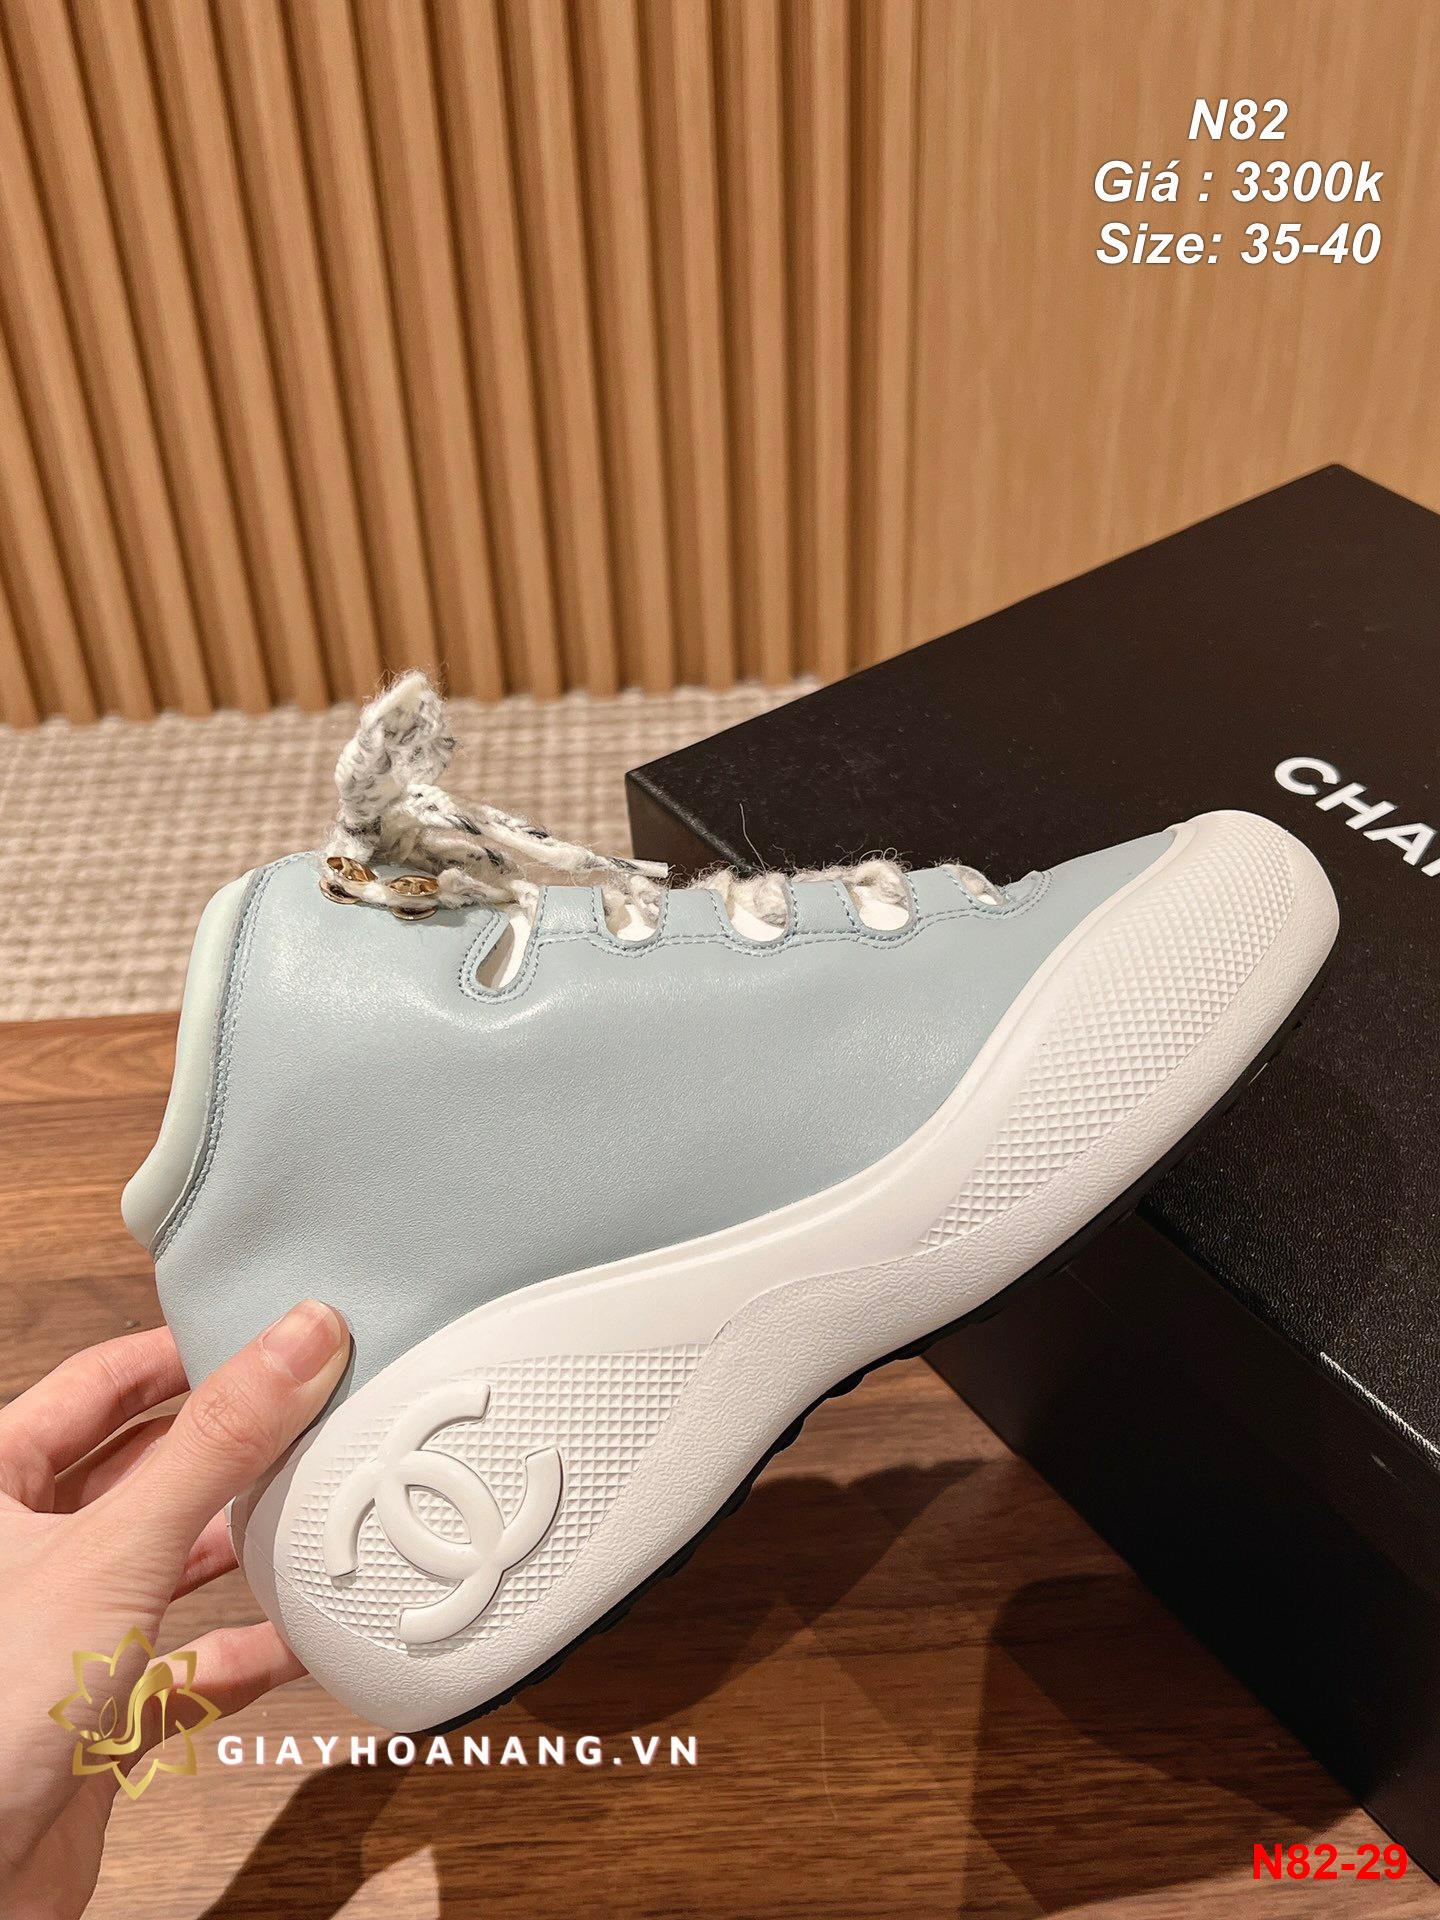 N82-29 Chanel giày thể thao siêu cấp